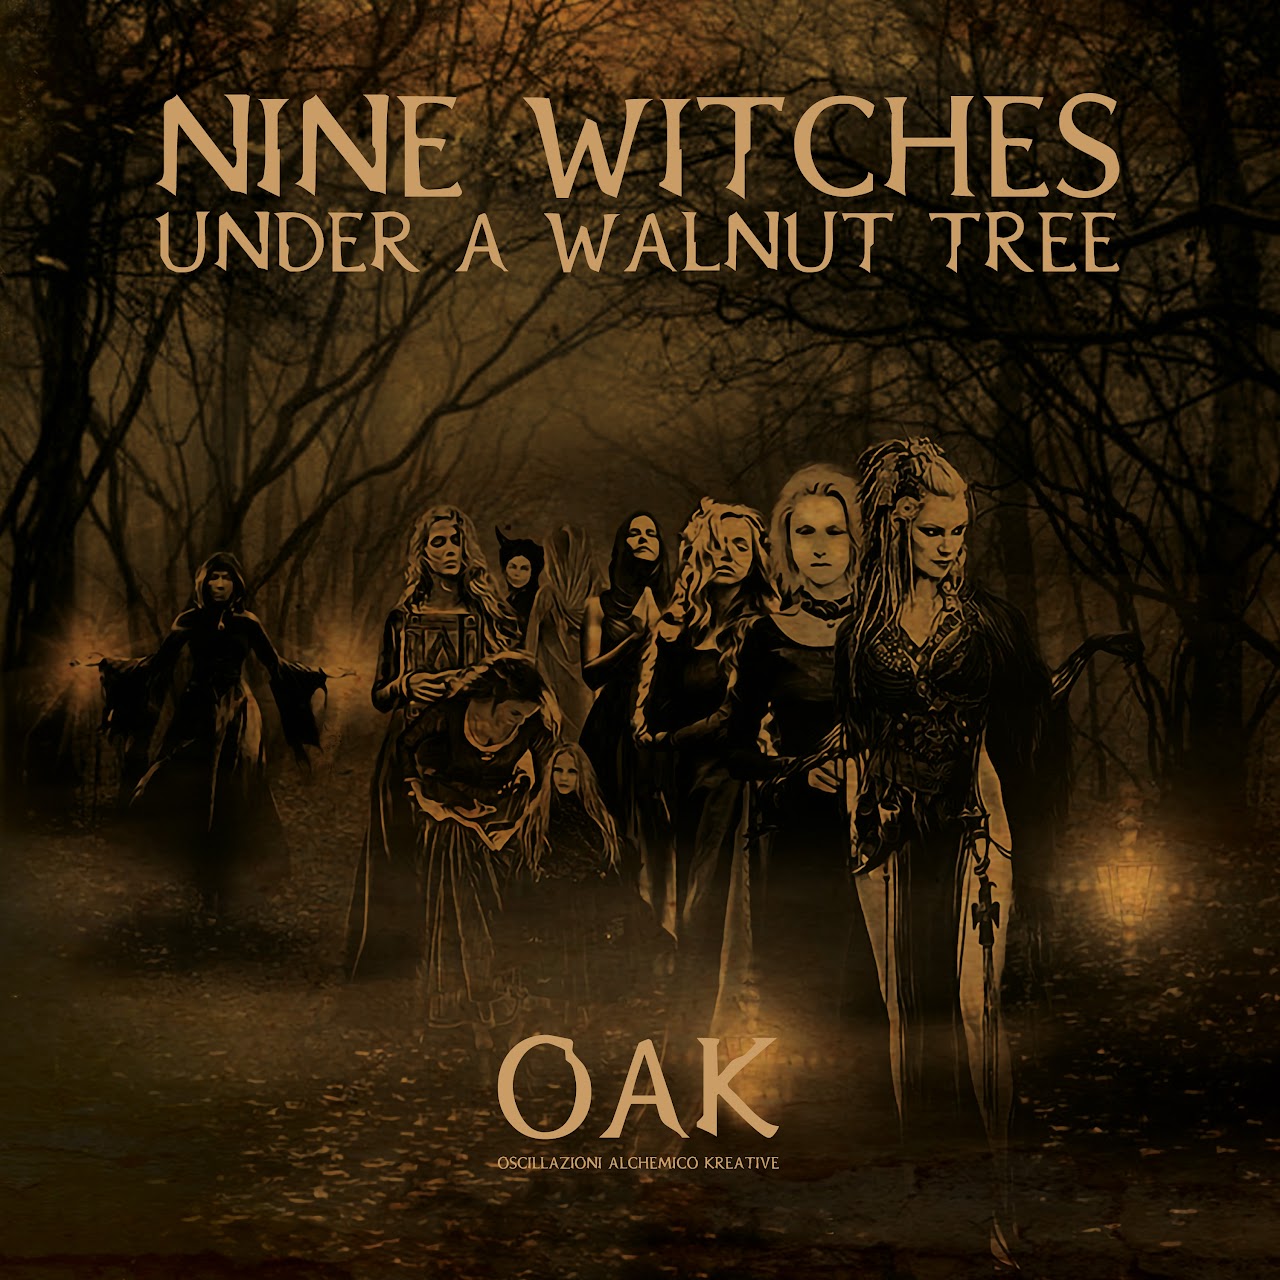 Oscillazioni Alchemico Kreative (OAK) — Nine Witches under a Walnut Tree